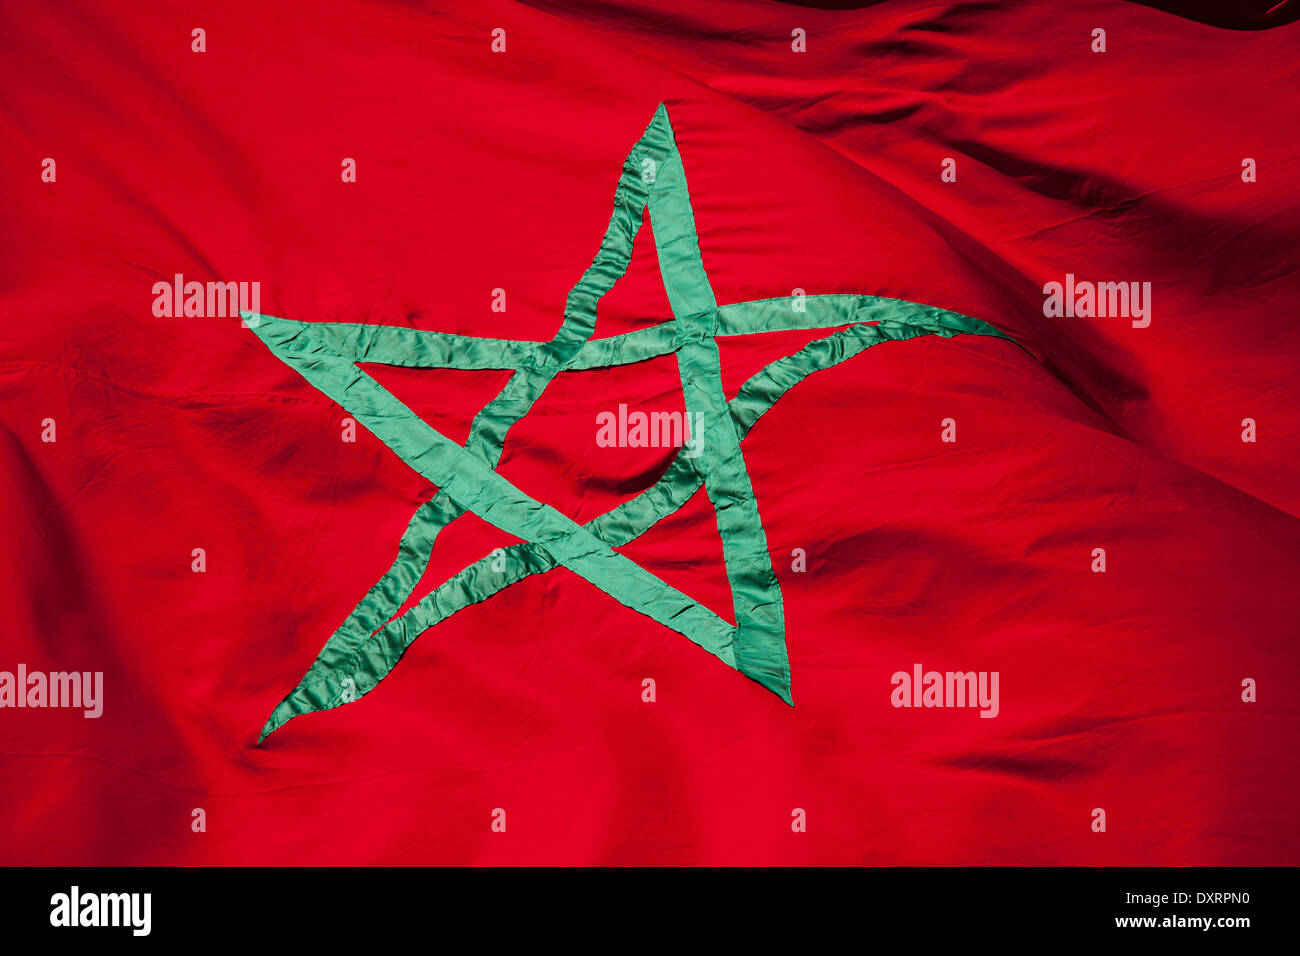 Drapeau national du Maroc. Étoile verte sur fond rouge Banque D'Images